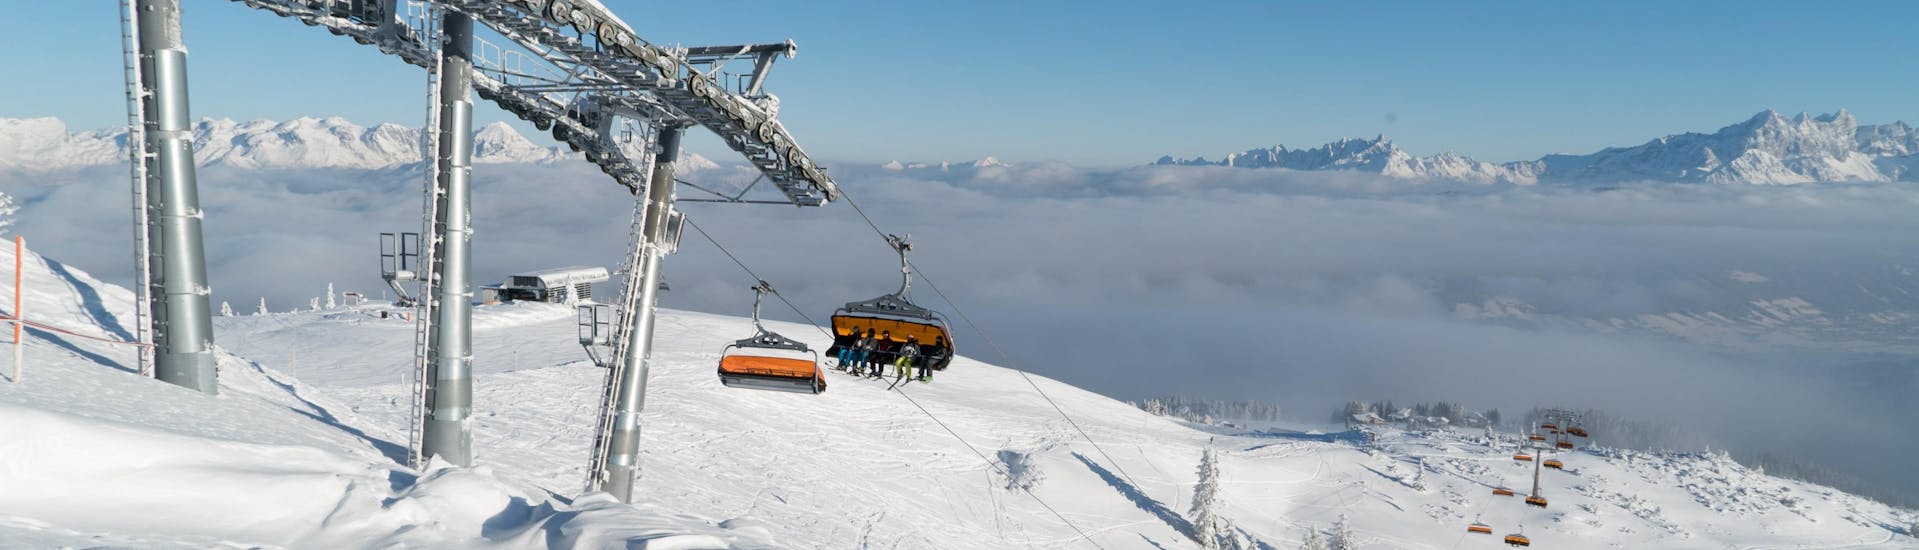 Een skilift in het skigebied van Wagrain in Oostenrijk, waar je skilessen kunt boeken.